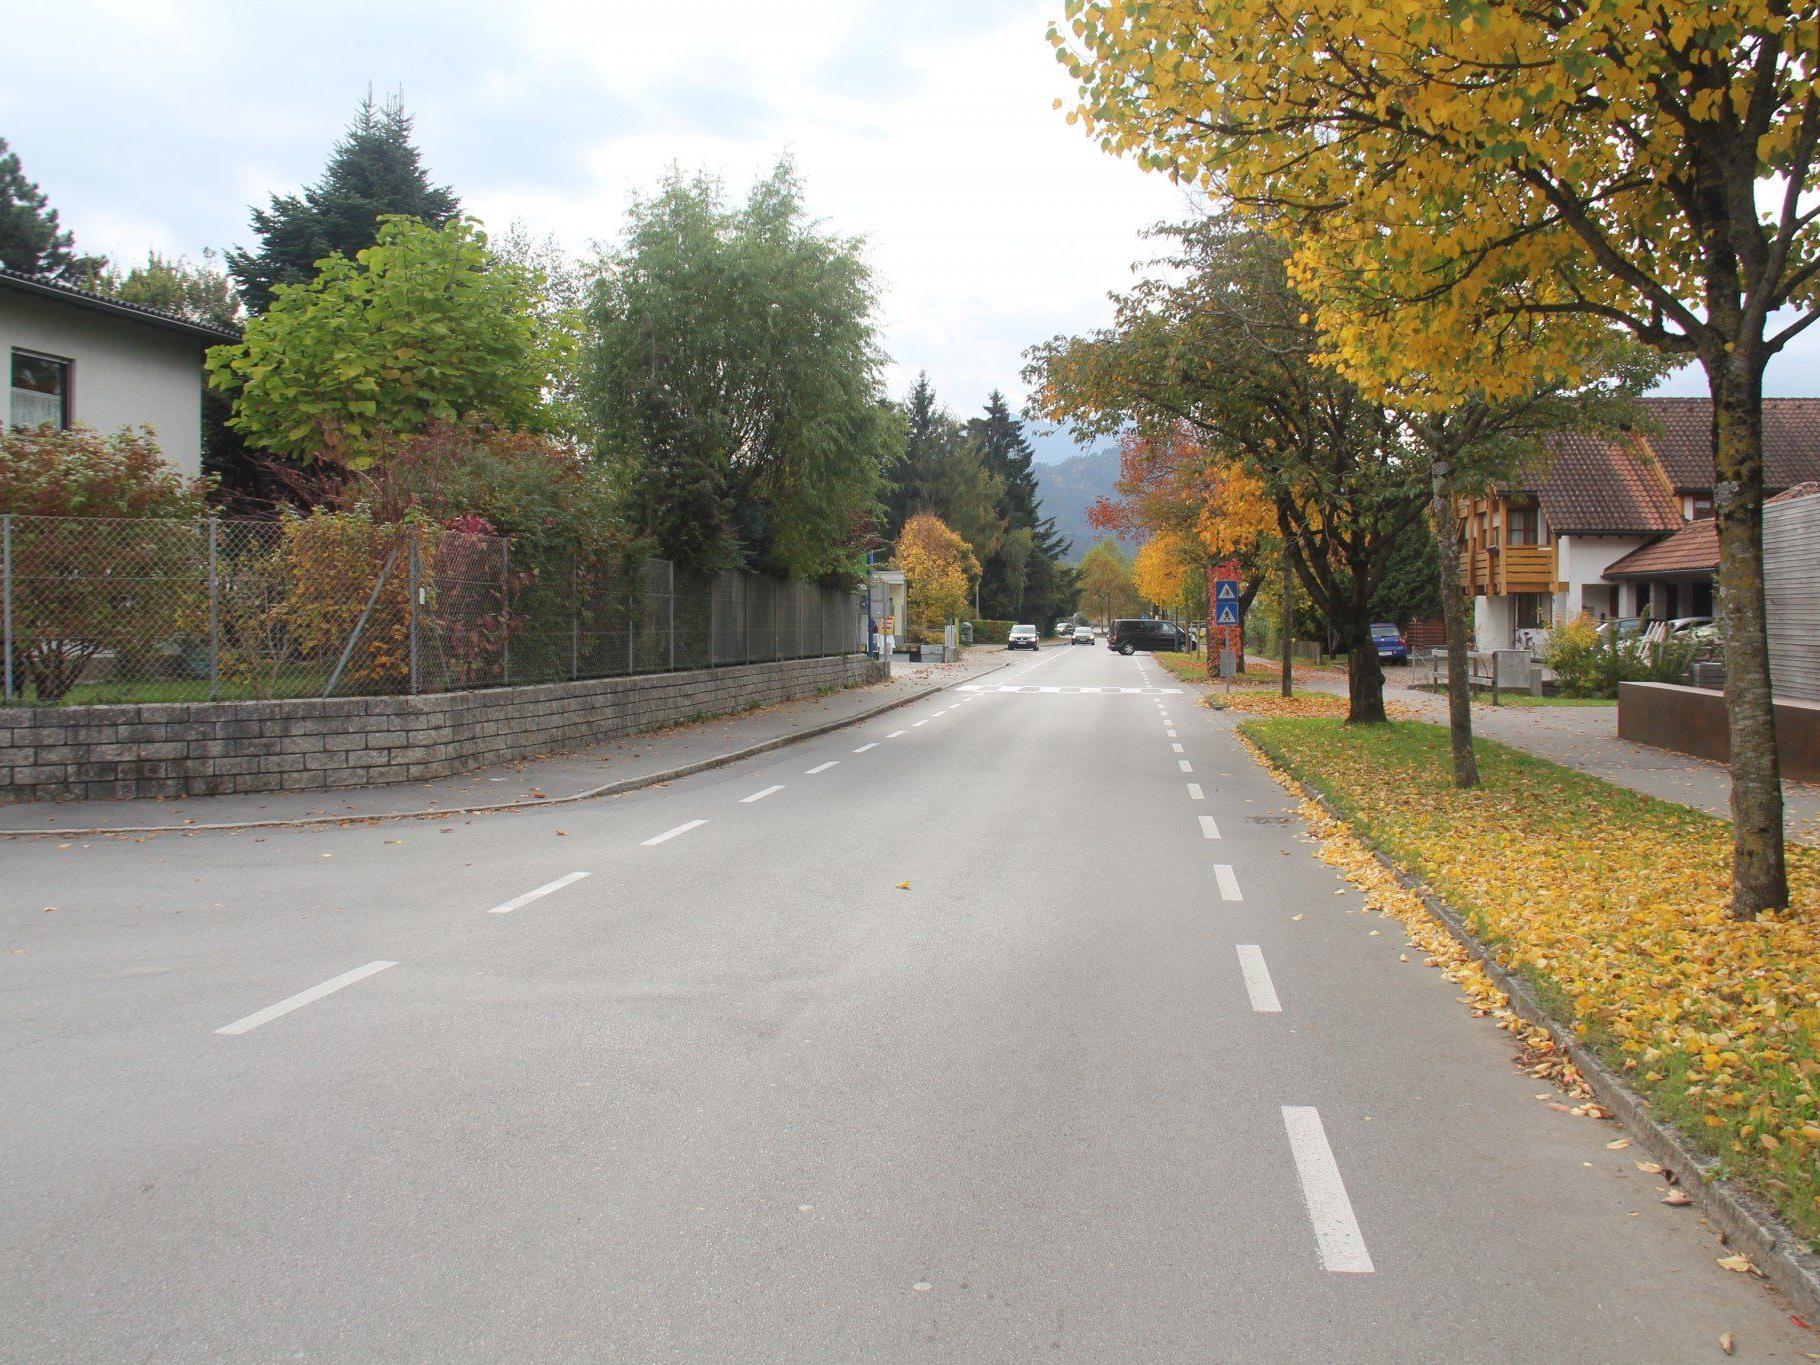 VOL.AT stellt die Straßen in Vorarlberg in einer großen Serie vor.  Im Bild die Vorderlandstraße.